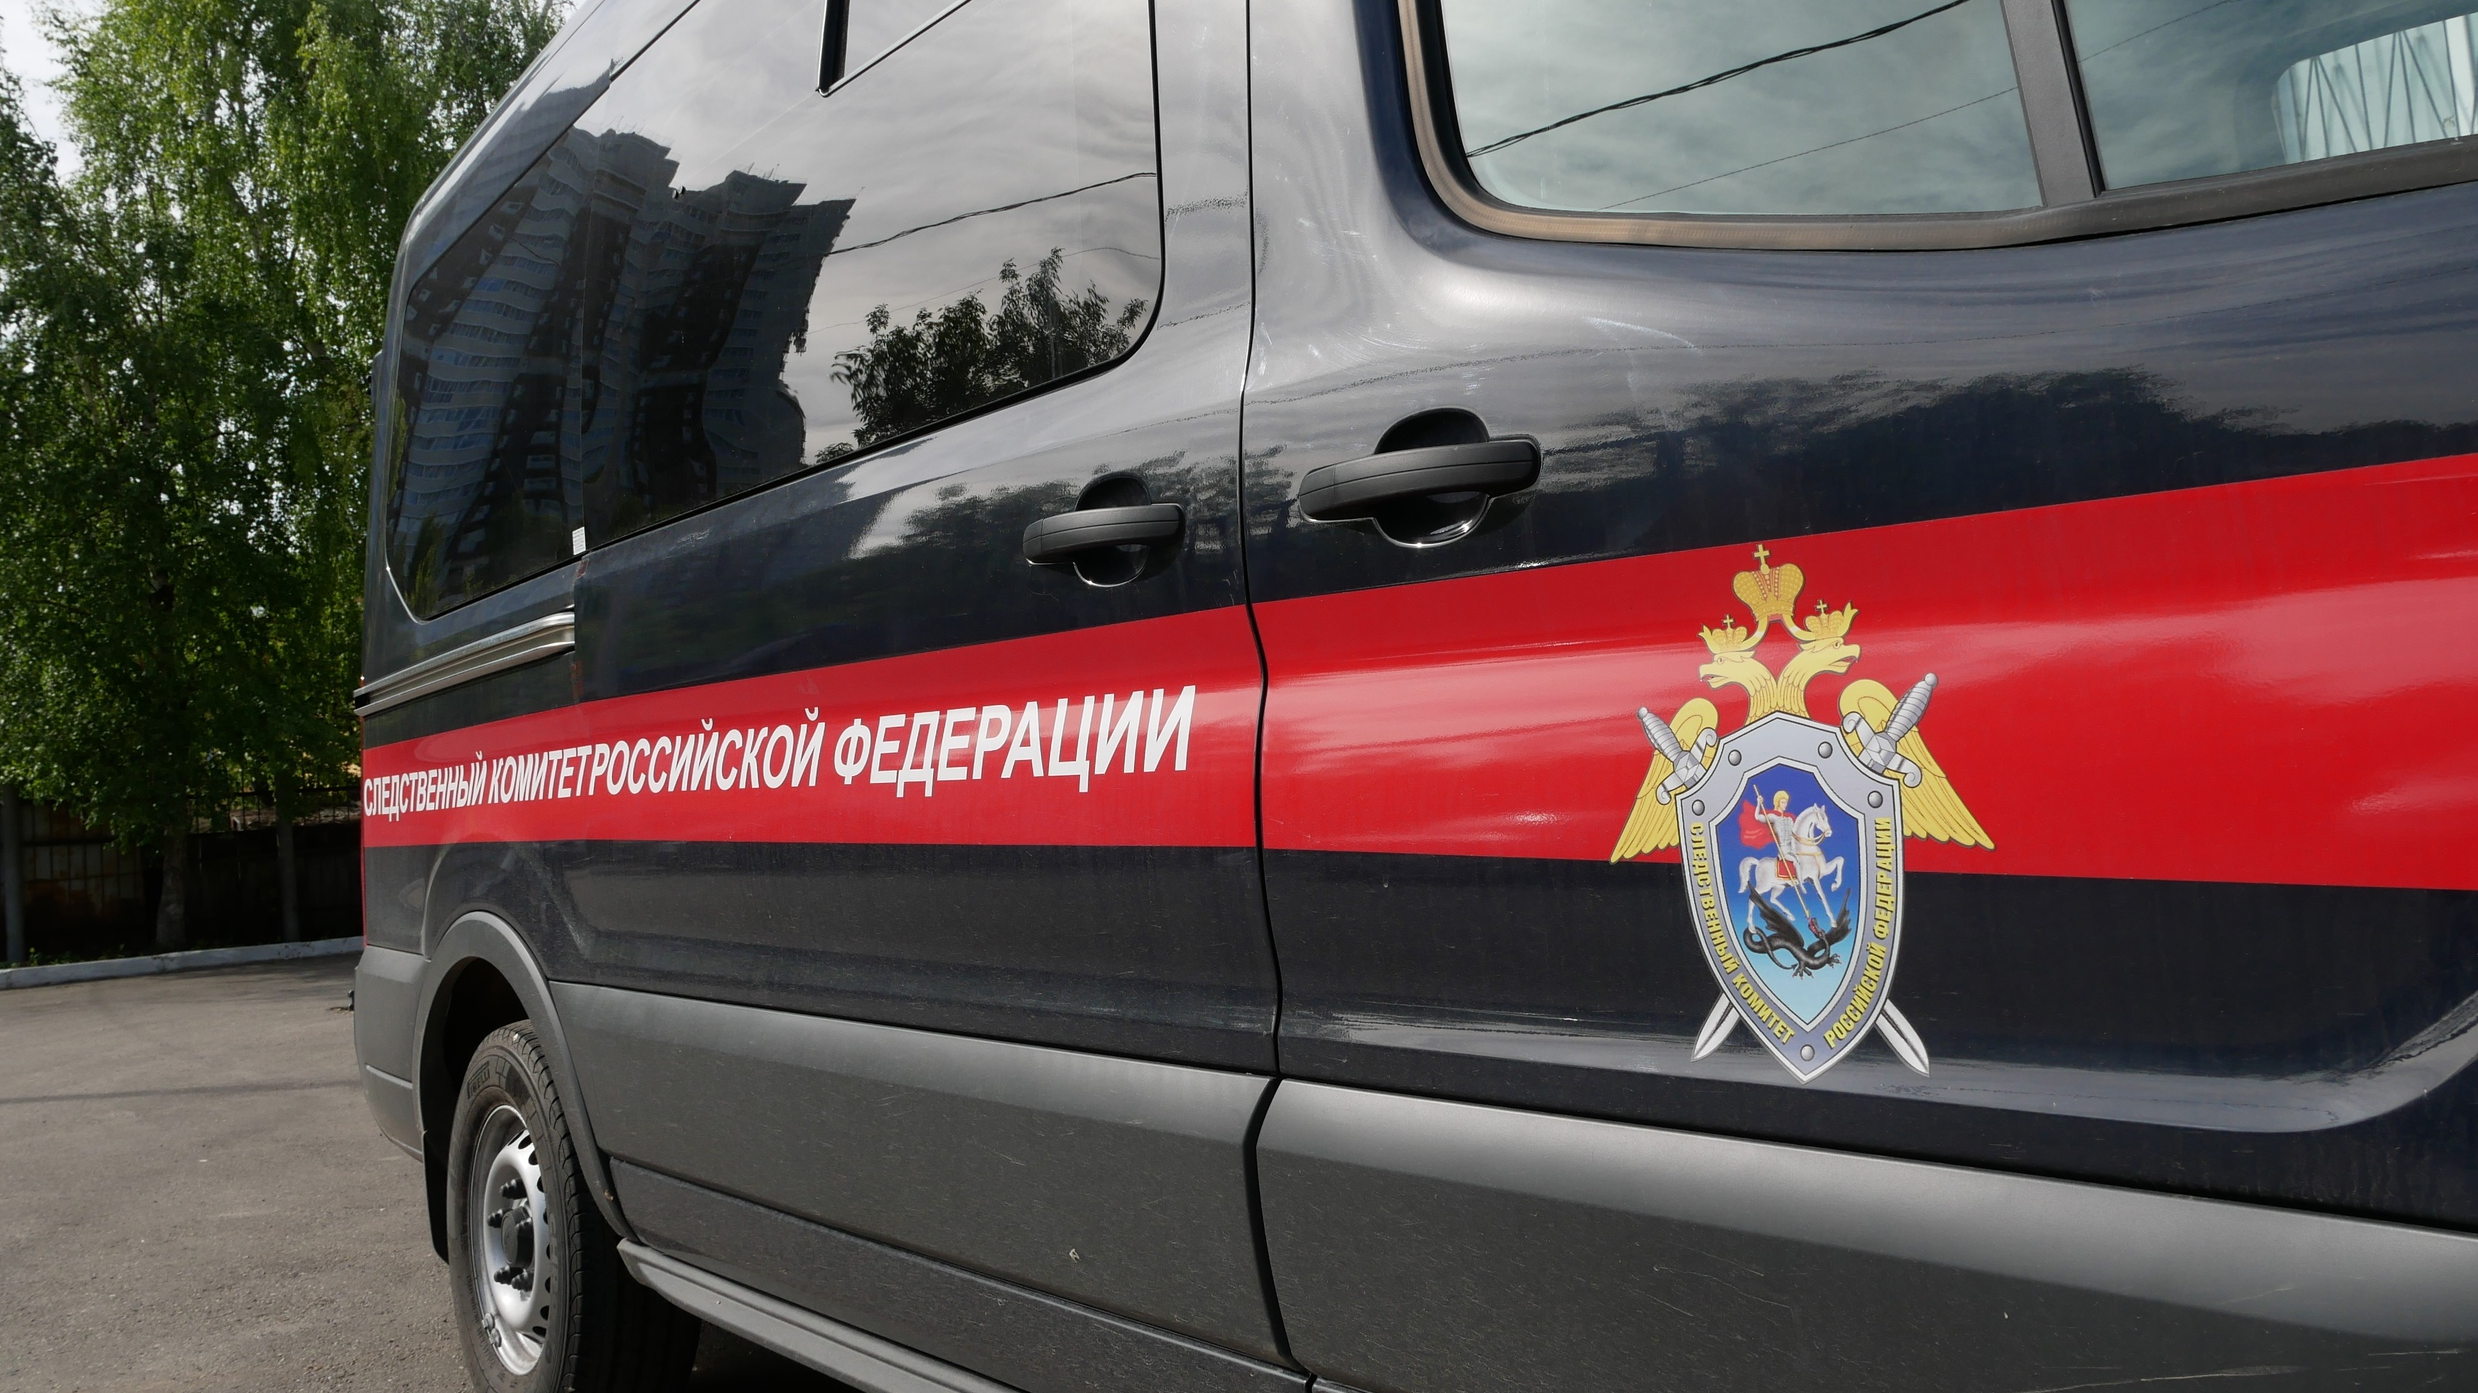 Ульяновские следователи будут разбираться в избиении пенсионера на детской площадке 